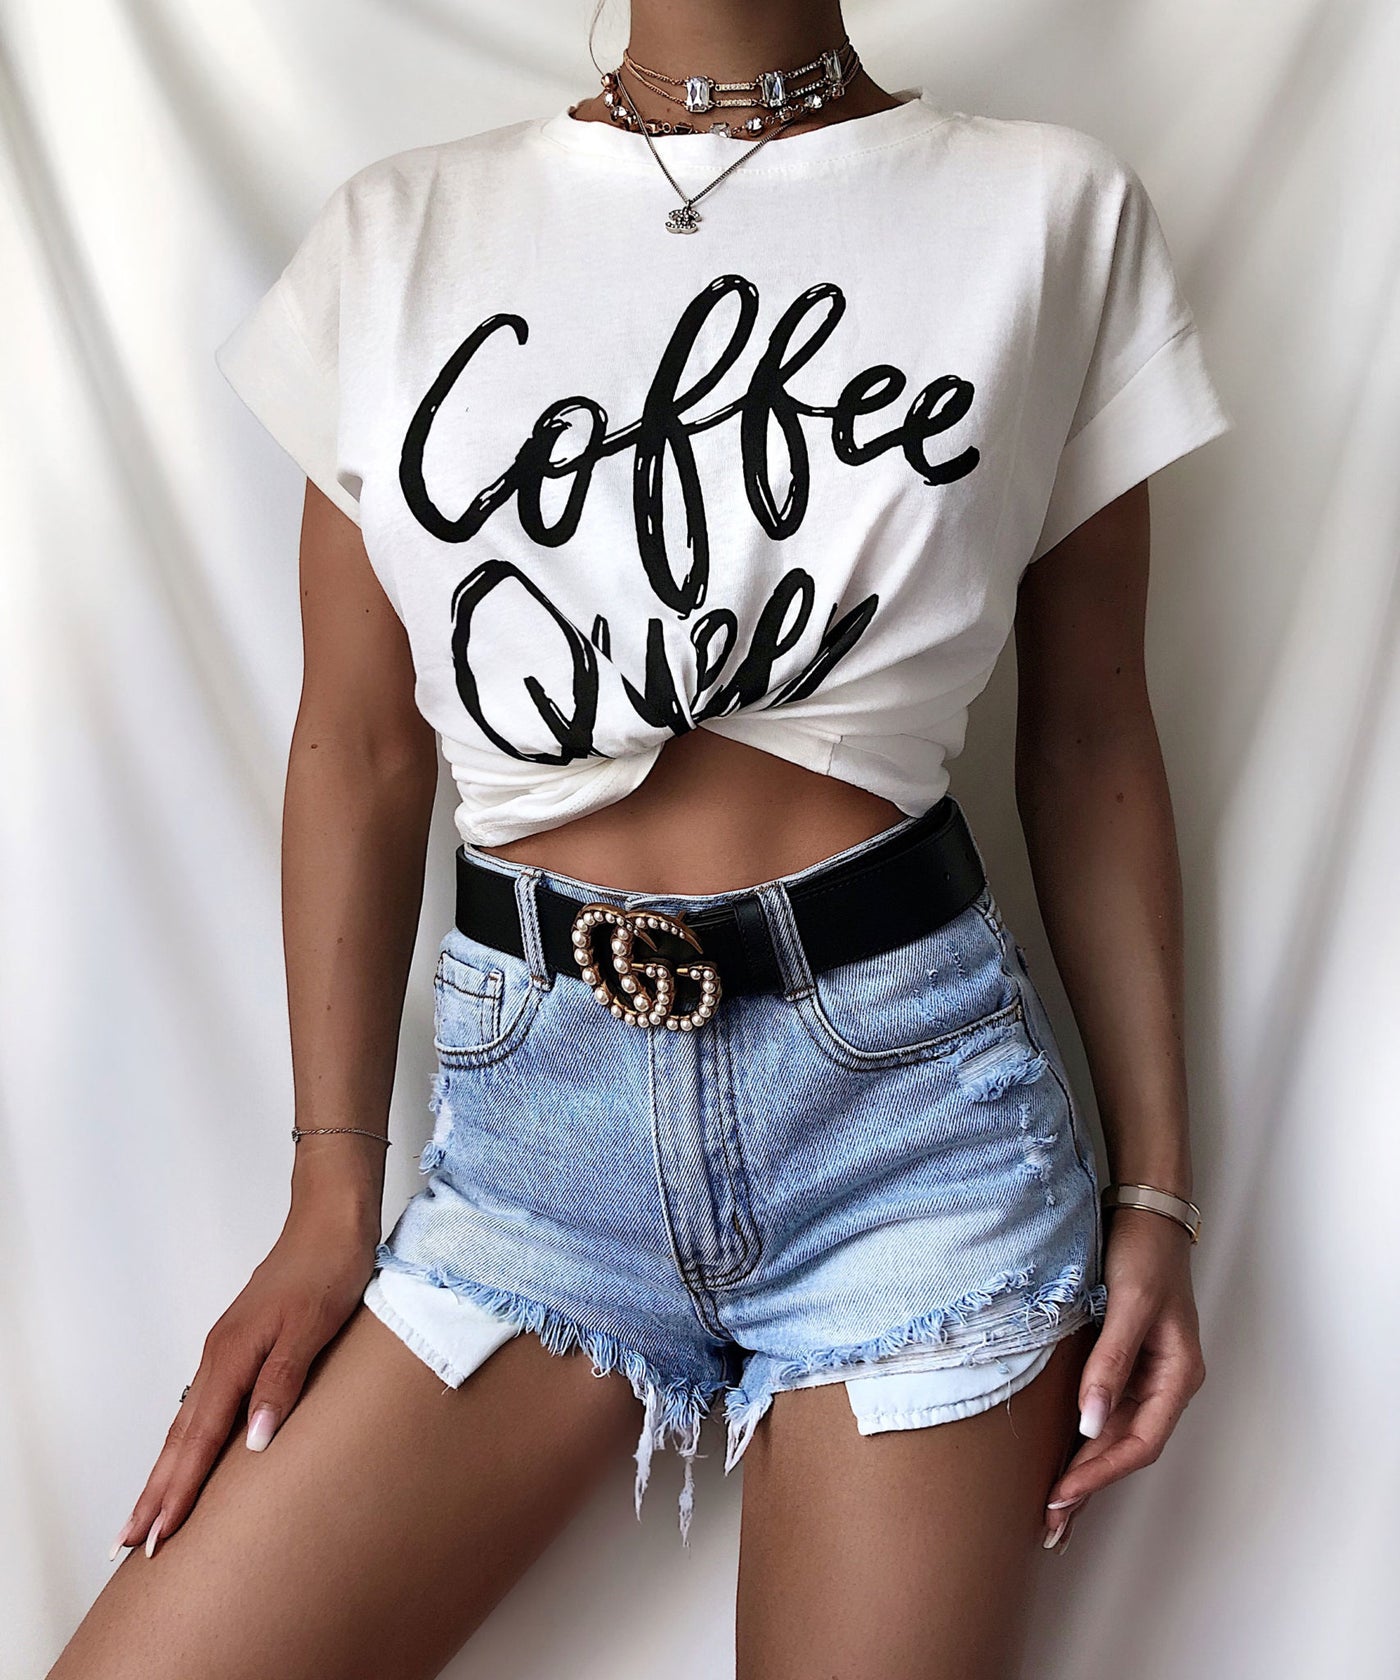 Coffee Queen t-shirt